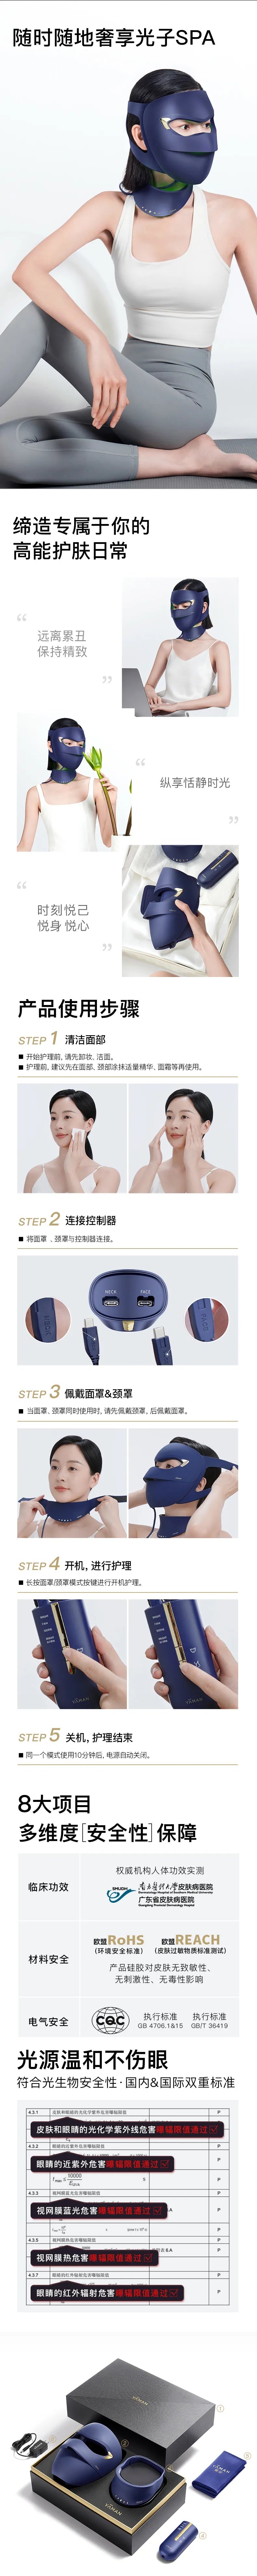 Ya-man Blue Green Mask Chinese Brochure Final Part| Ya-man Malaysia | BeautyFoo Mall Malaysia